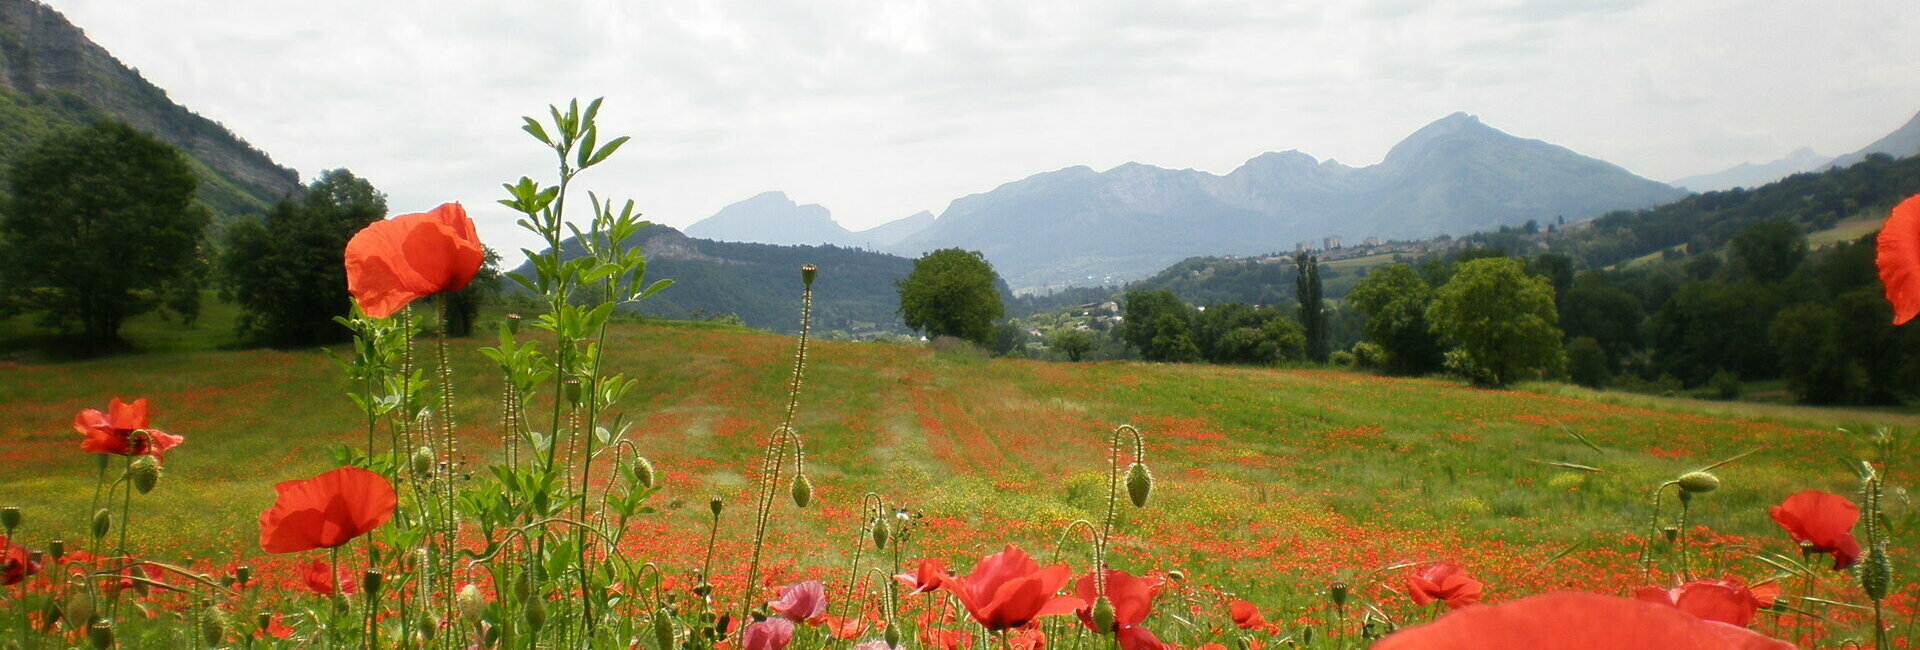 Commune de Méry - Massif du Revard en Savoie